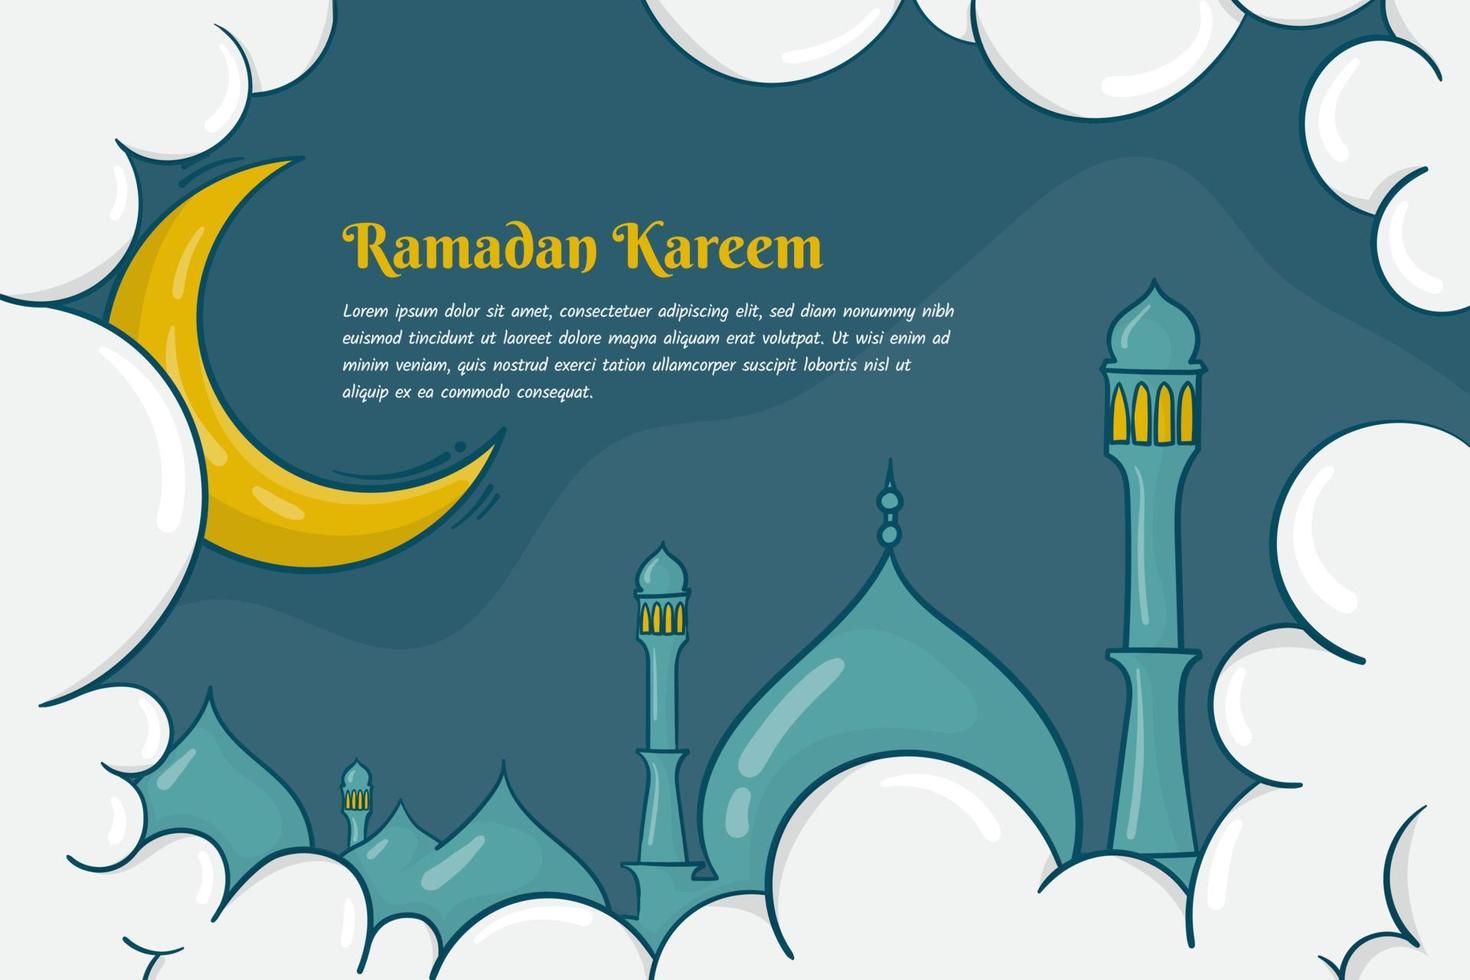 Ramadan kareem met wolk en moskee achtergrond in hand- getrokken concept ontwerp vector